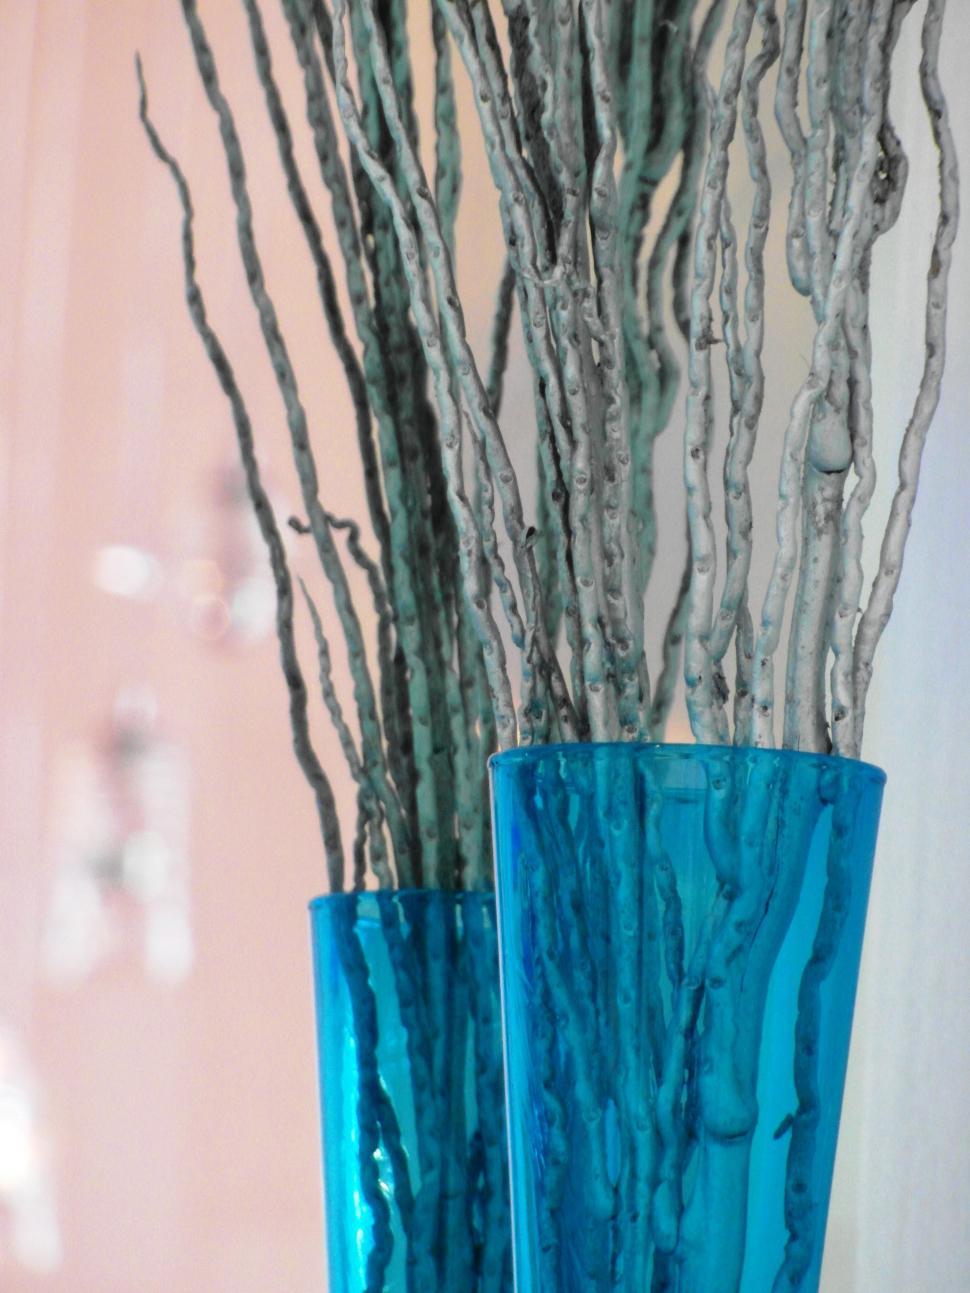 Free Image of Blue Glass Vase Decoration 